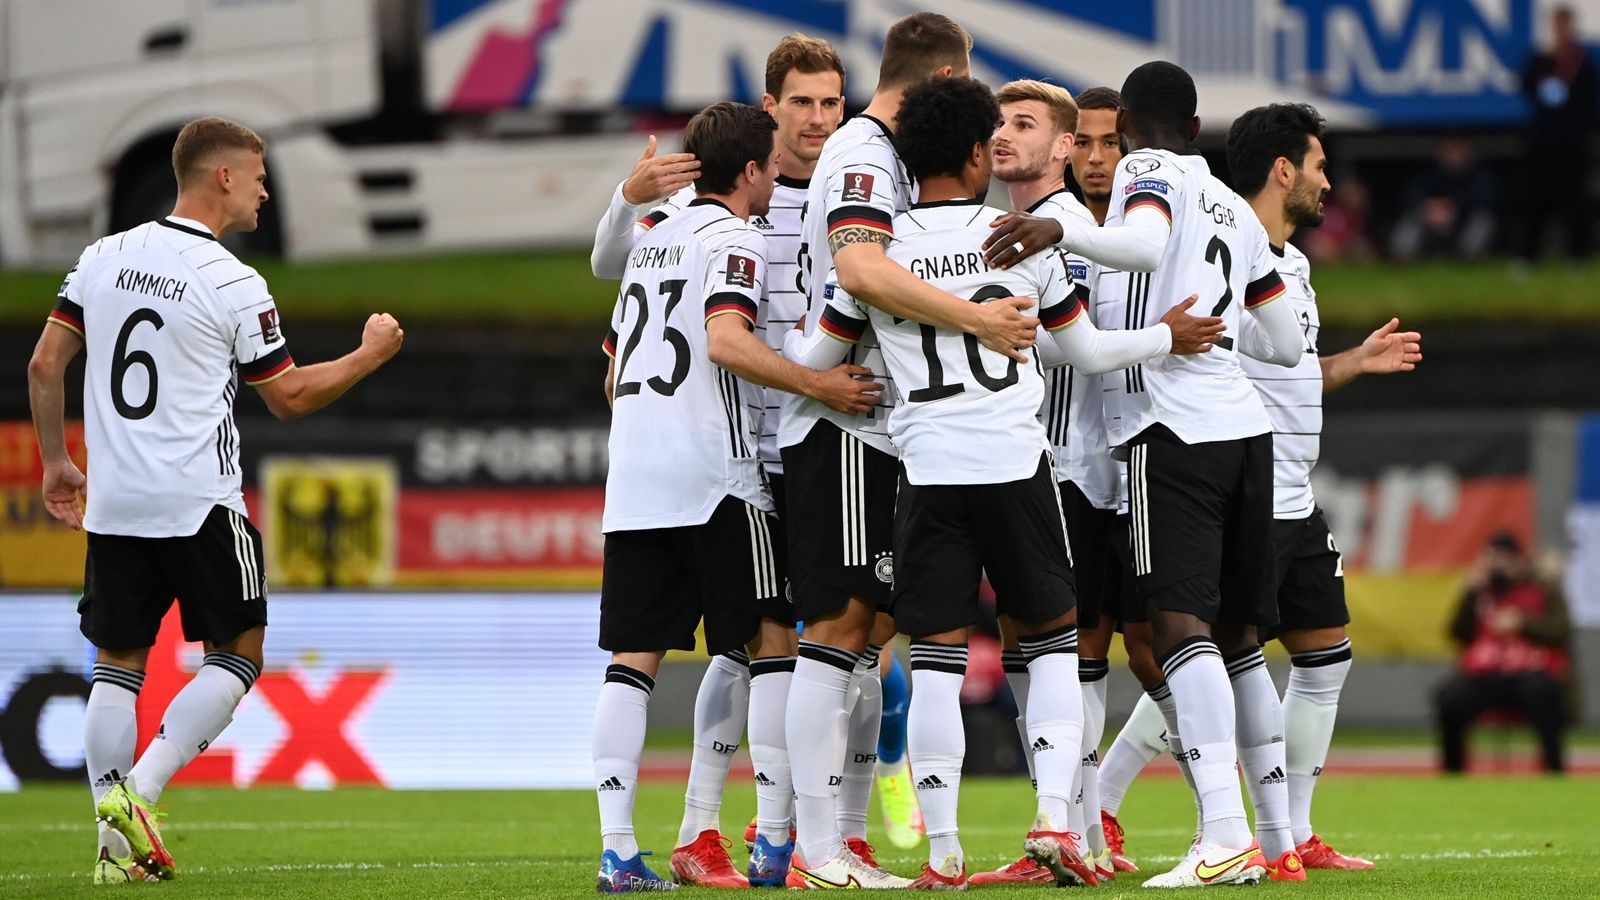 
                <strong>Titel Einzelkritik Island Deutschland</strong><br>
                Die deutsche Nationalmannschaft gewinnt auch das dritte Spiel unter Hansi Flick. Mit 4:0 bezwingt die DFB-Elf Island. ran benotet die Leistungen der deutschen Nationalspieler.
              